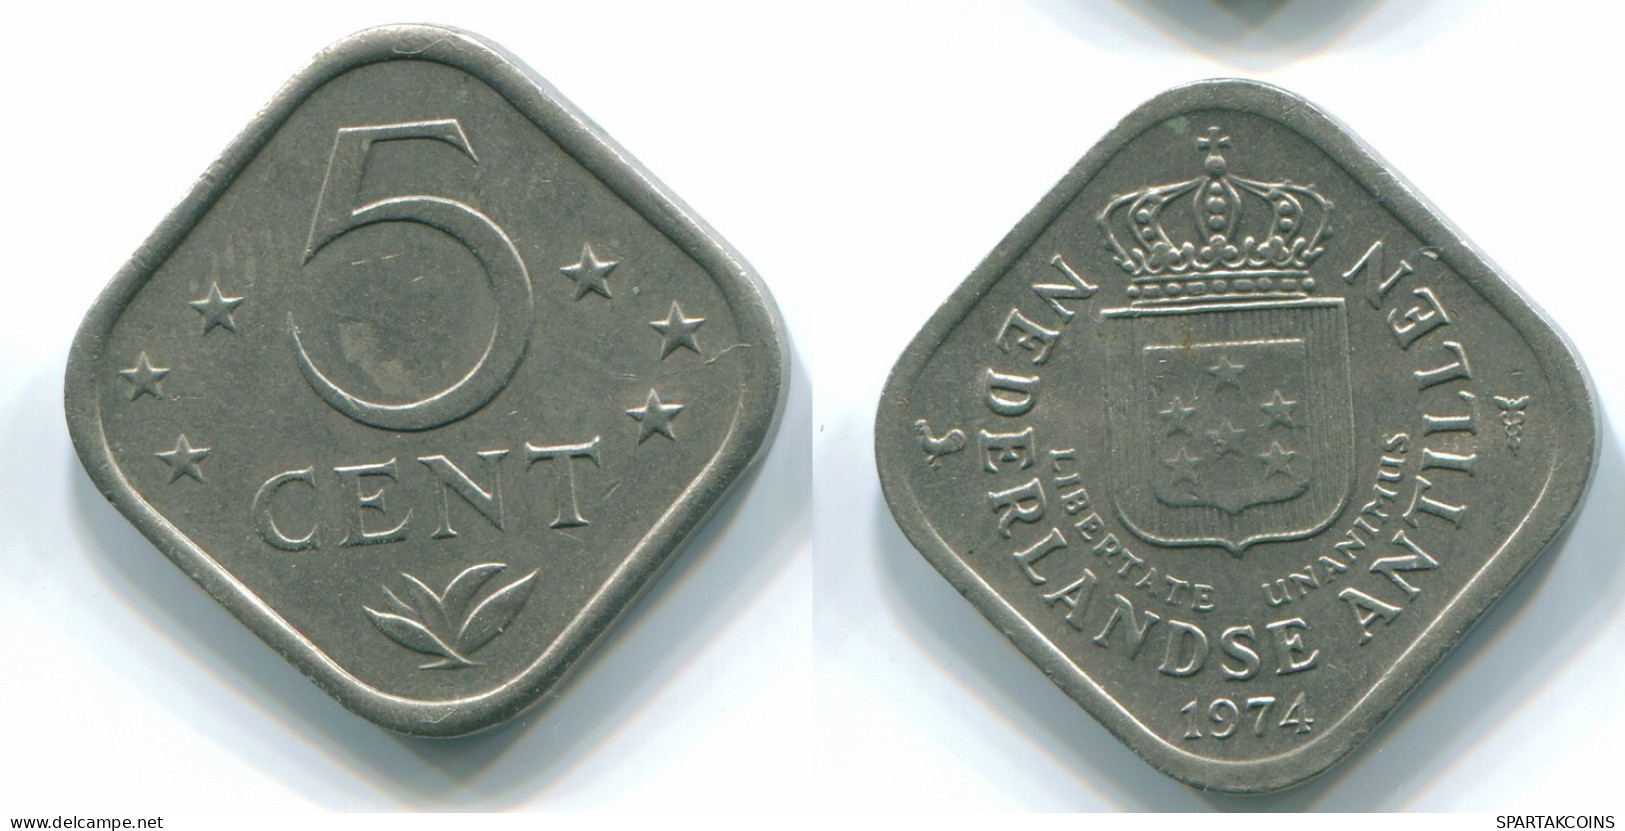 5 CENTS 1974 NETHERLANDS ANTILLES Nickel Colonial Coin #S12210.U.A - Niederländische Antillen